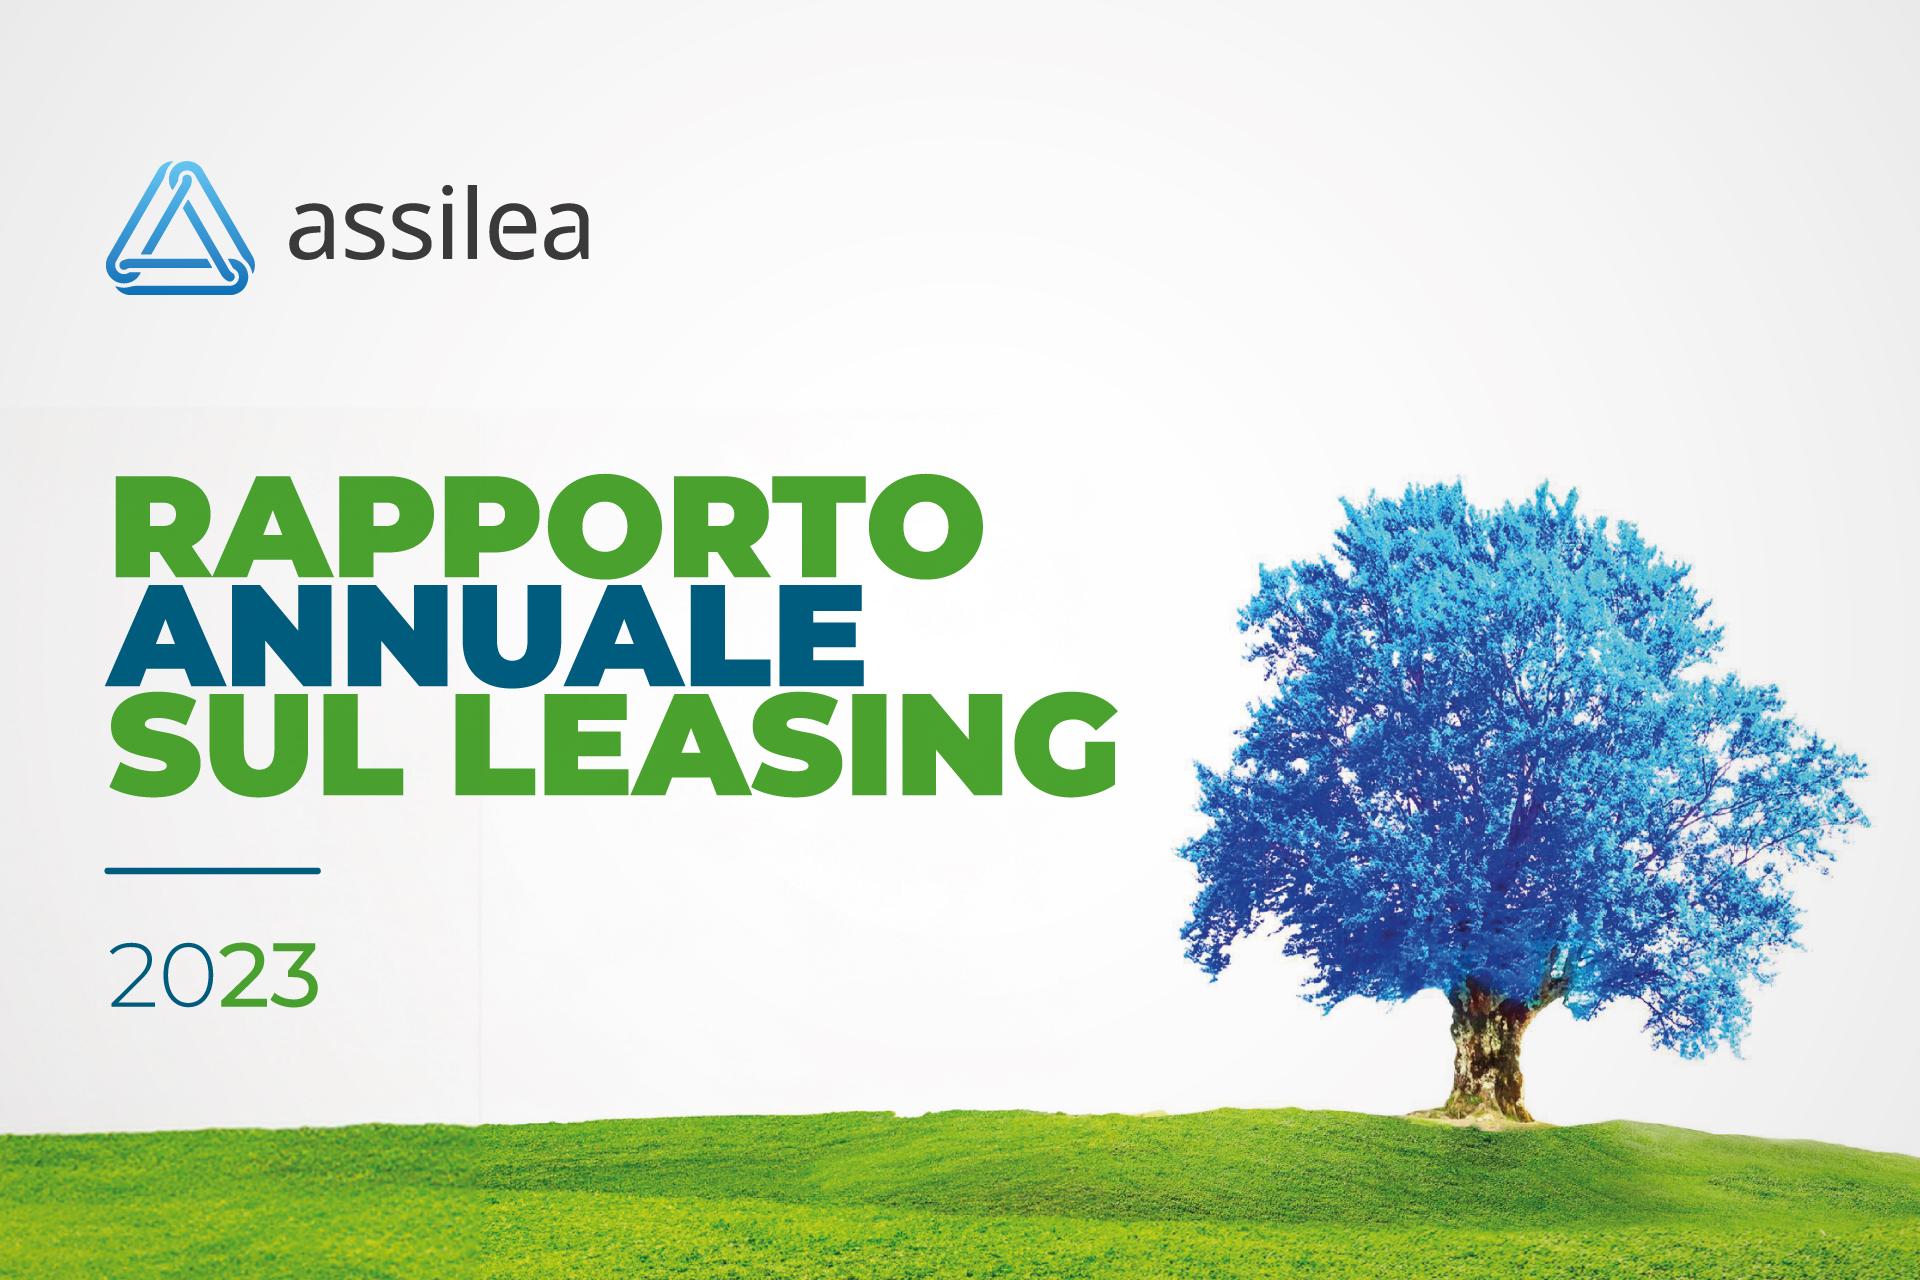 Assilea presenta il Rapporto annuale sul leasing 2023